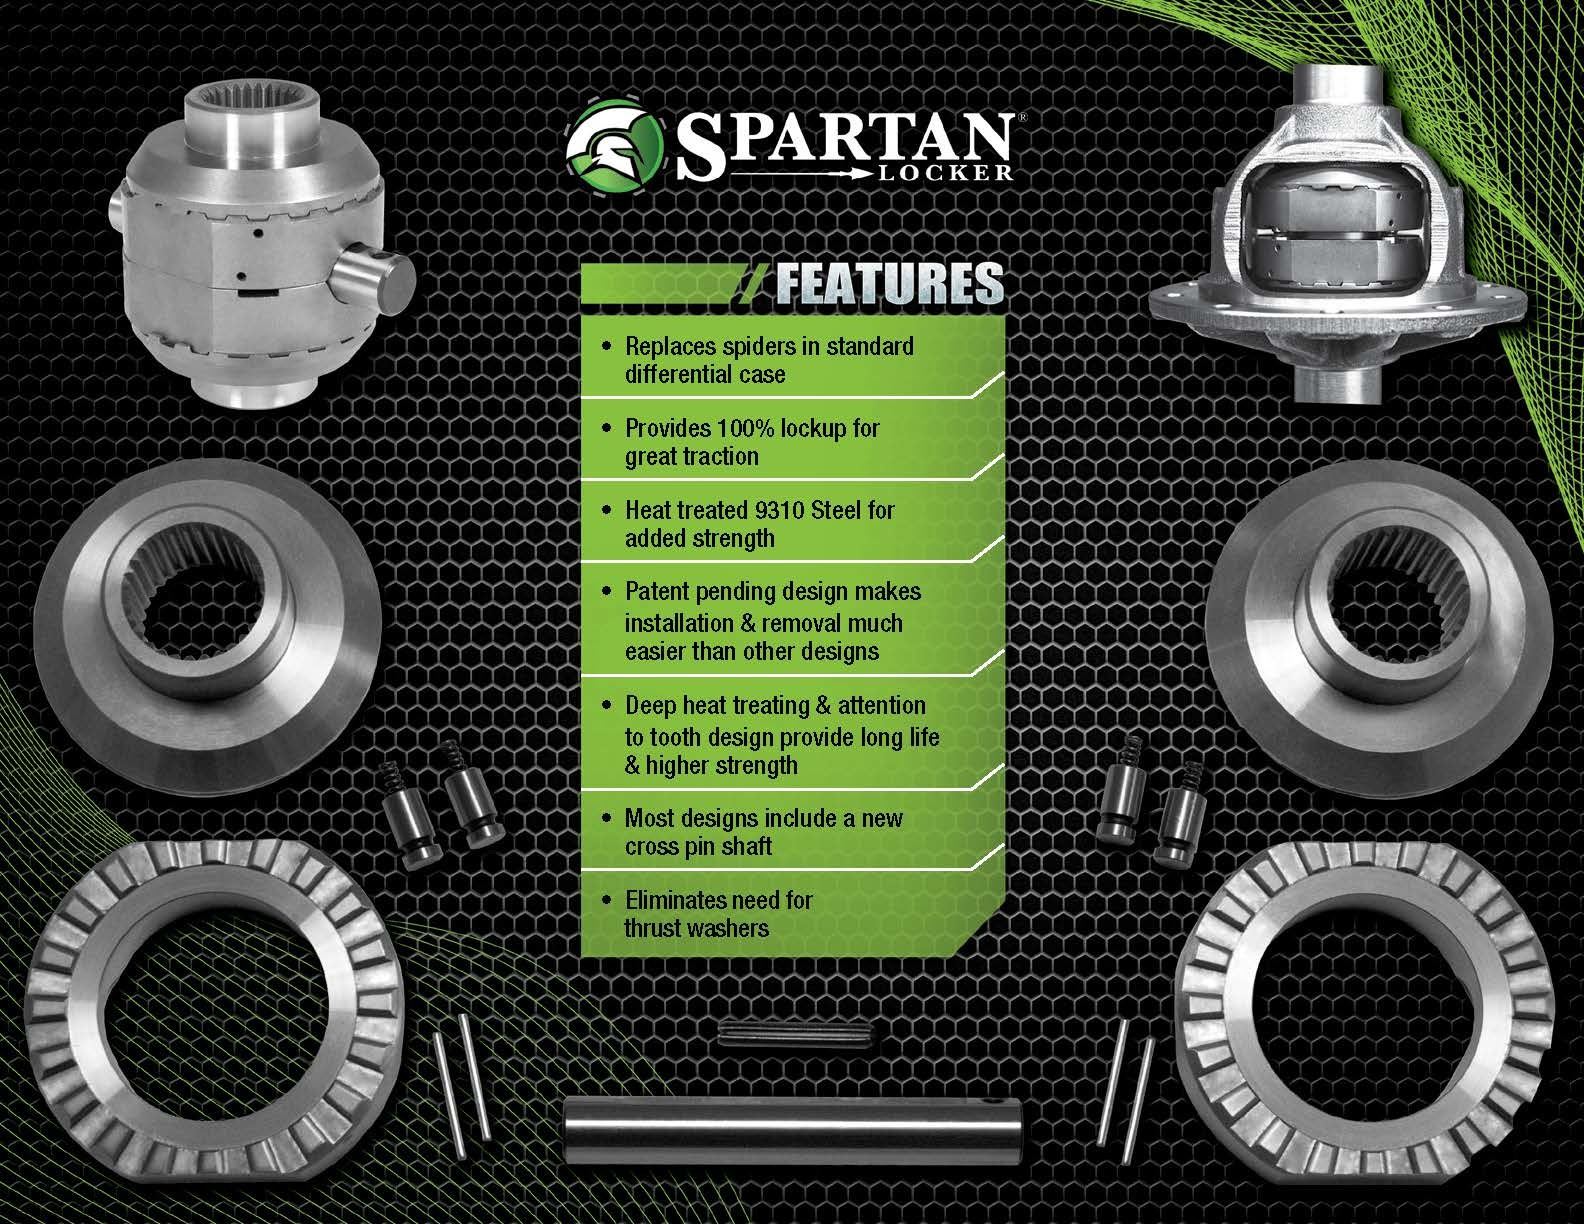 Spartan Locker for Dana 44HD, 30 spline axles, with heavy-duty cross pin shaft